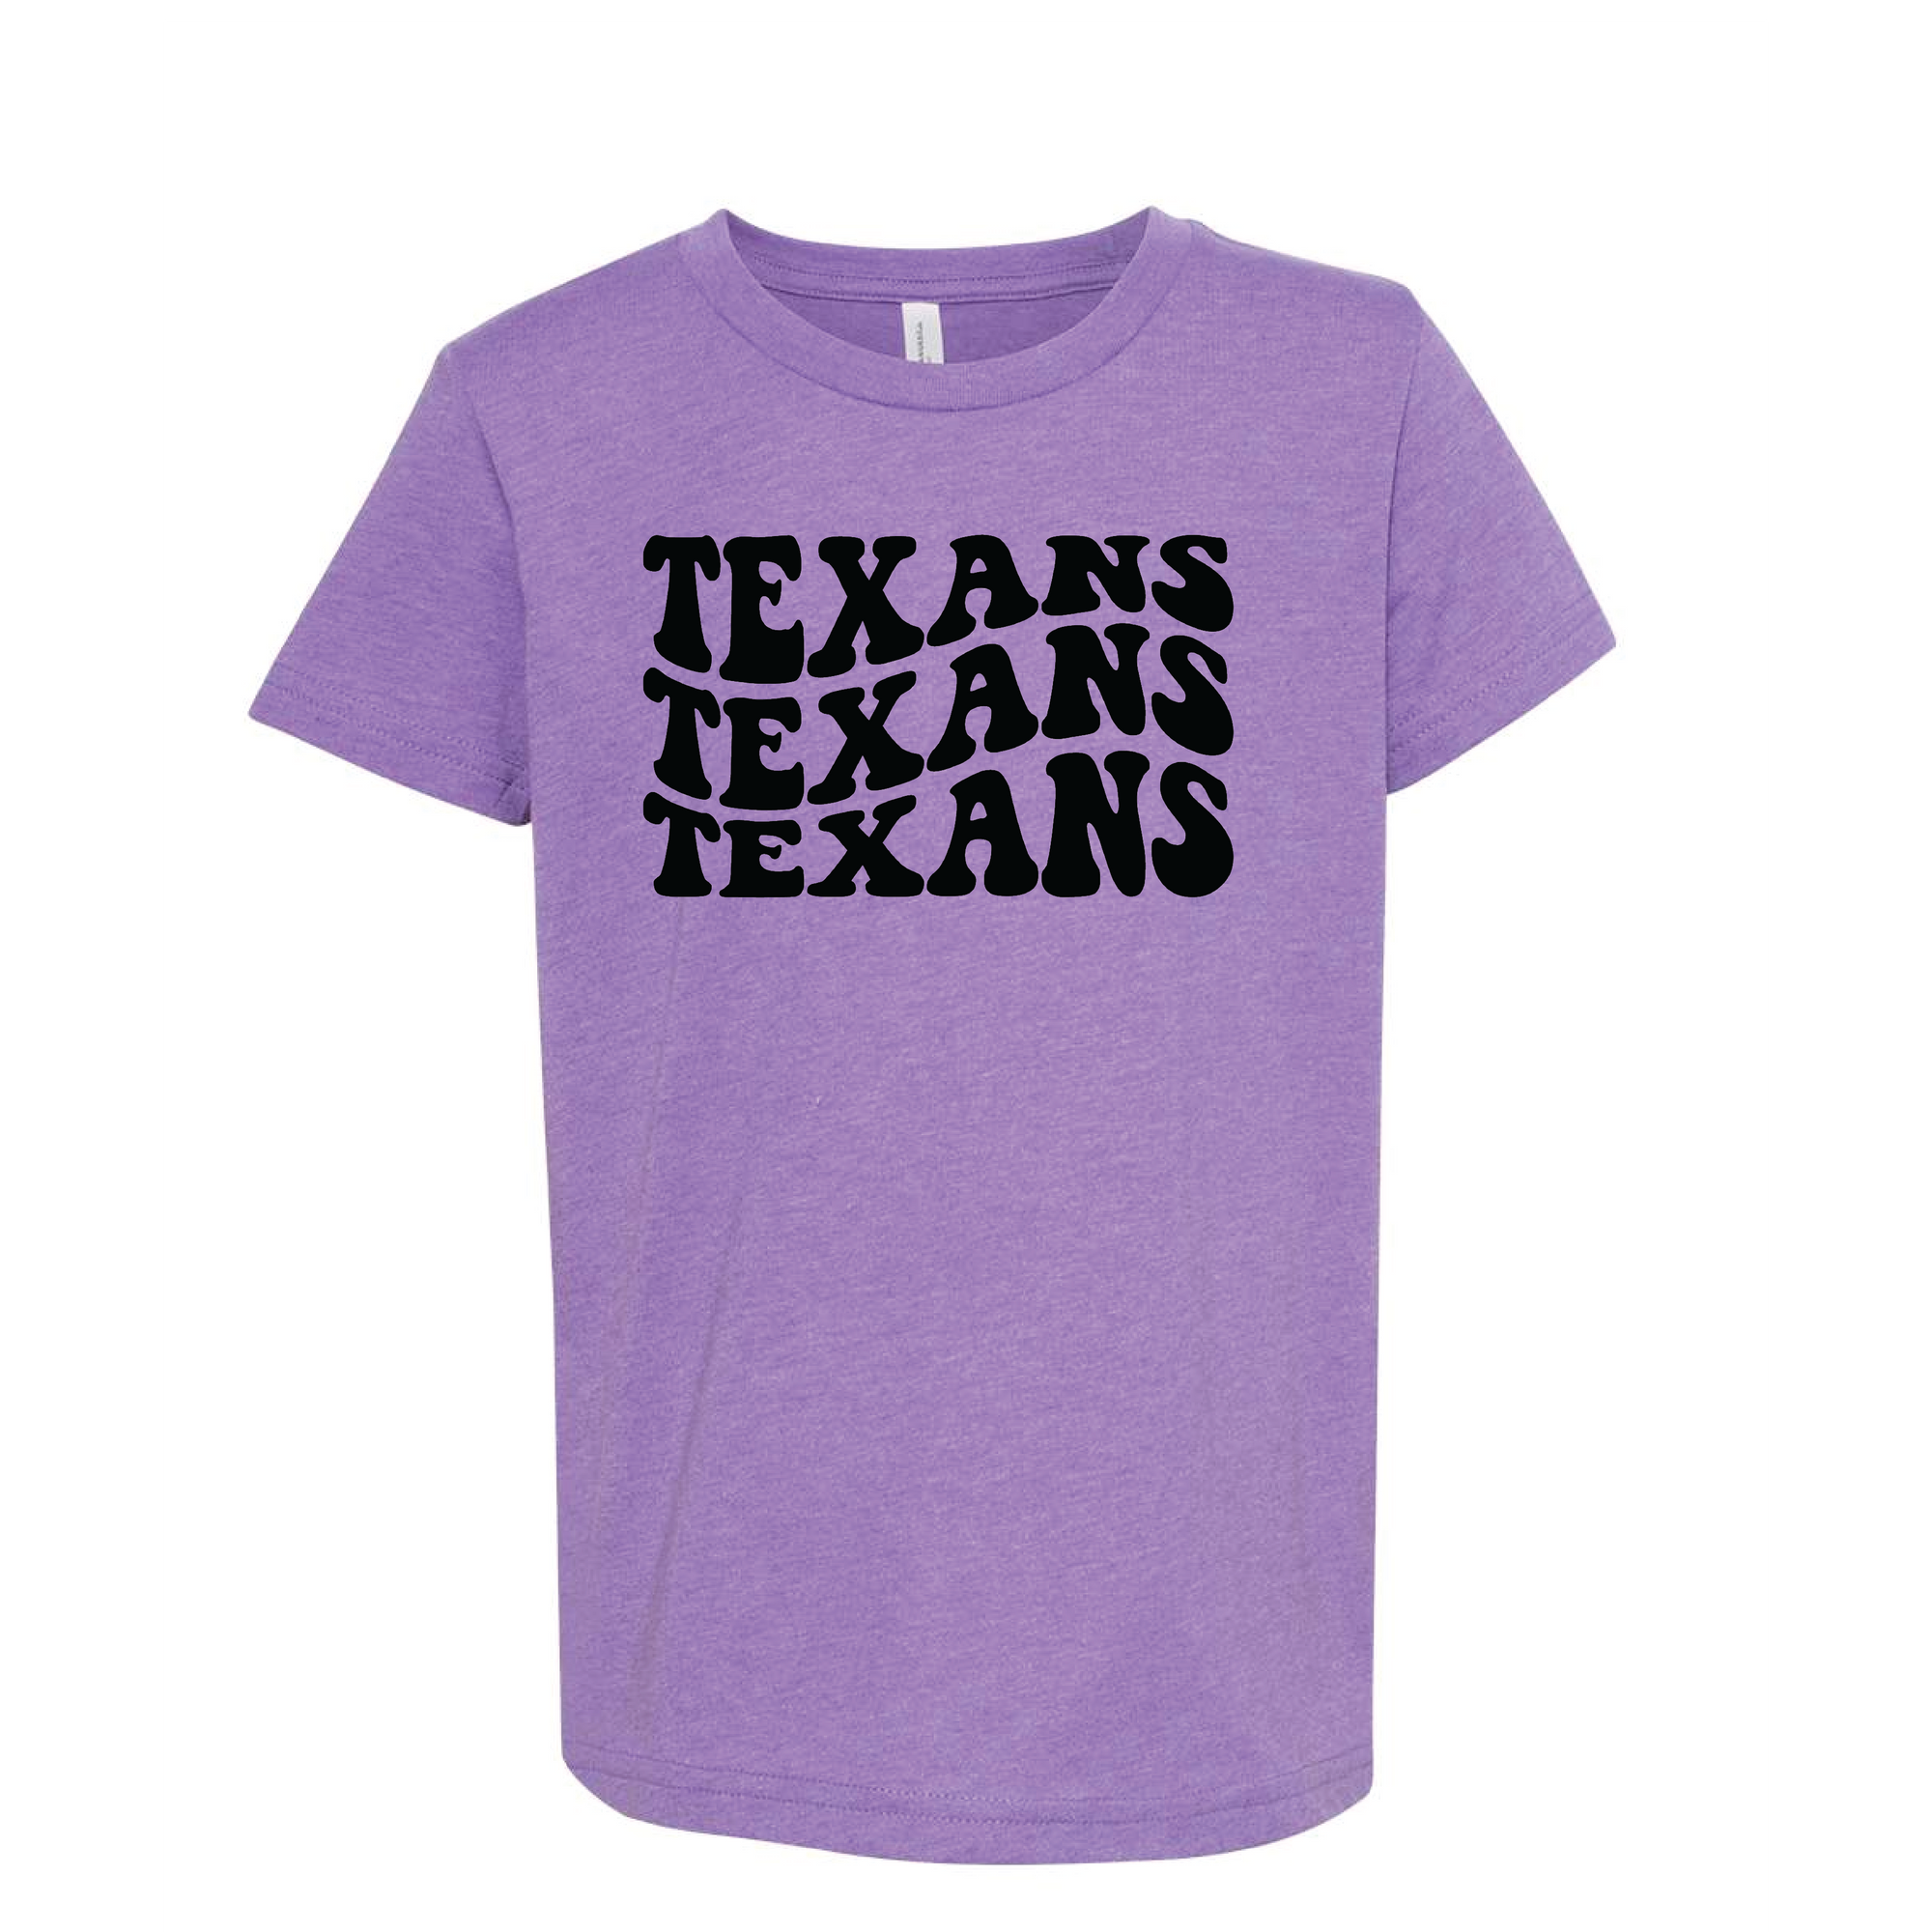 Wavy Texans Tee